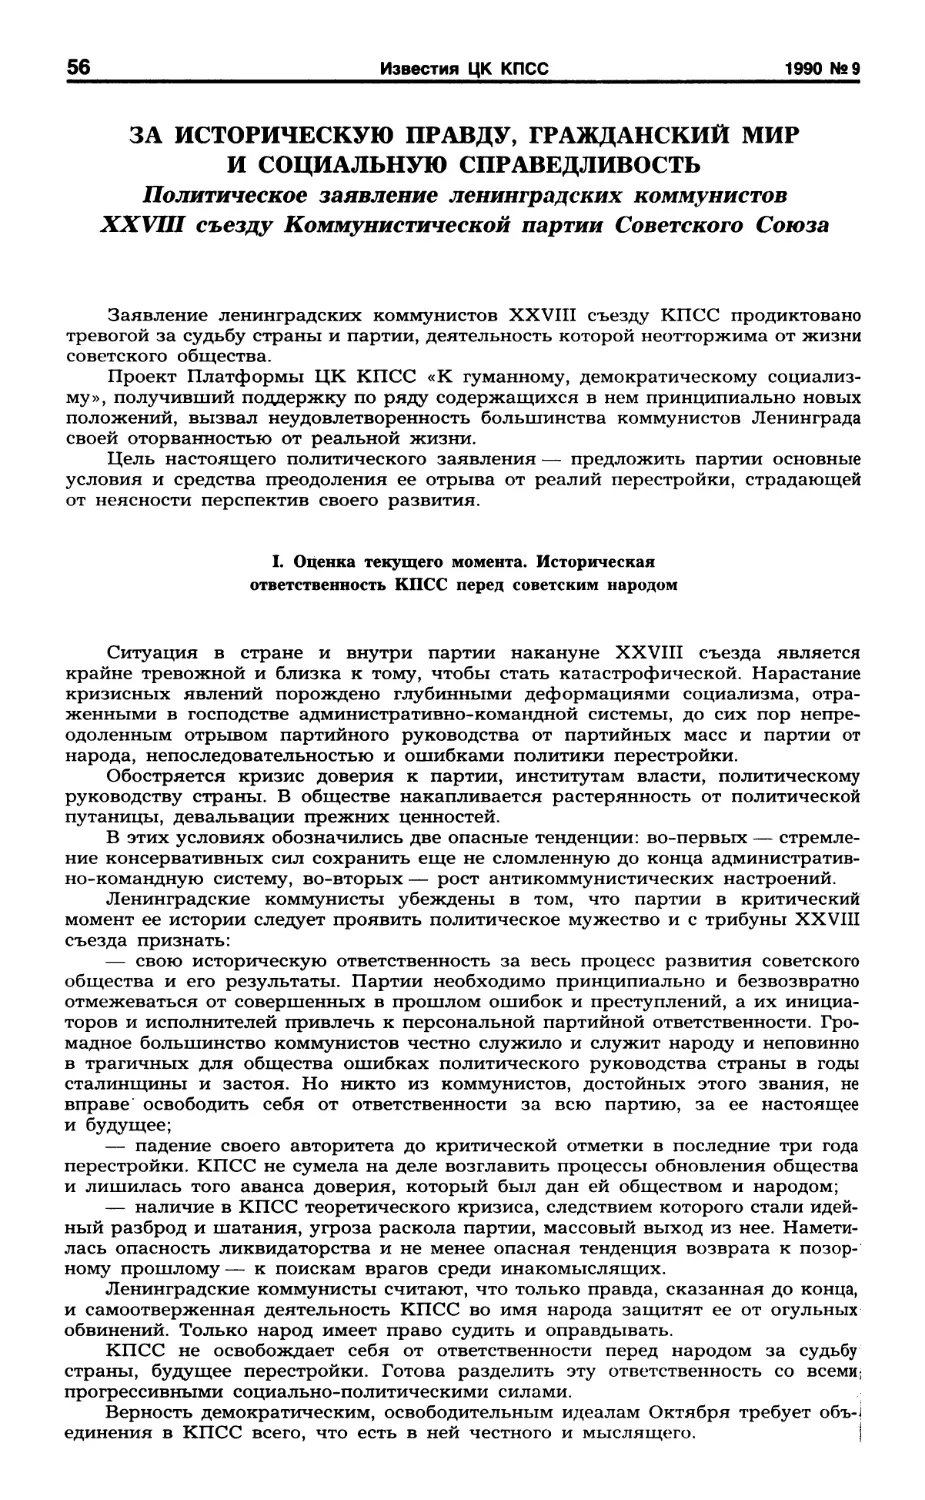 Политическое заявление ленинградских коммунистов XXVIII съезду КПСС